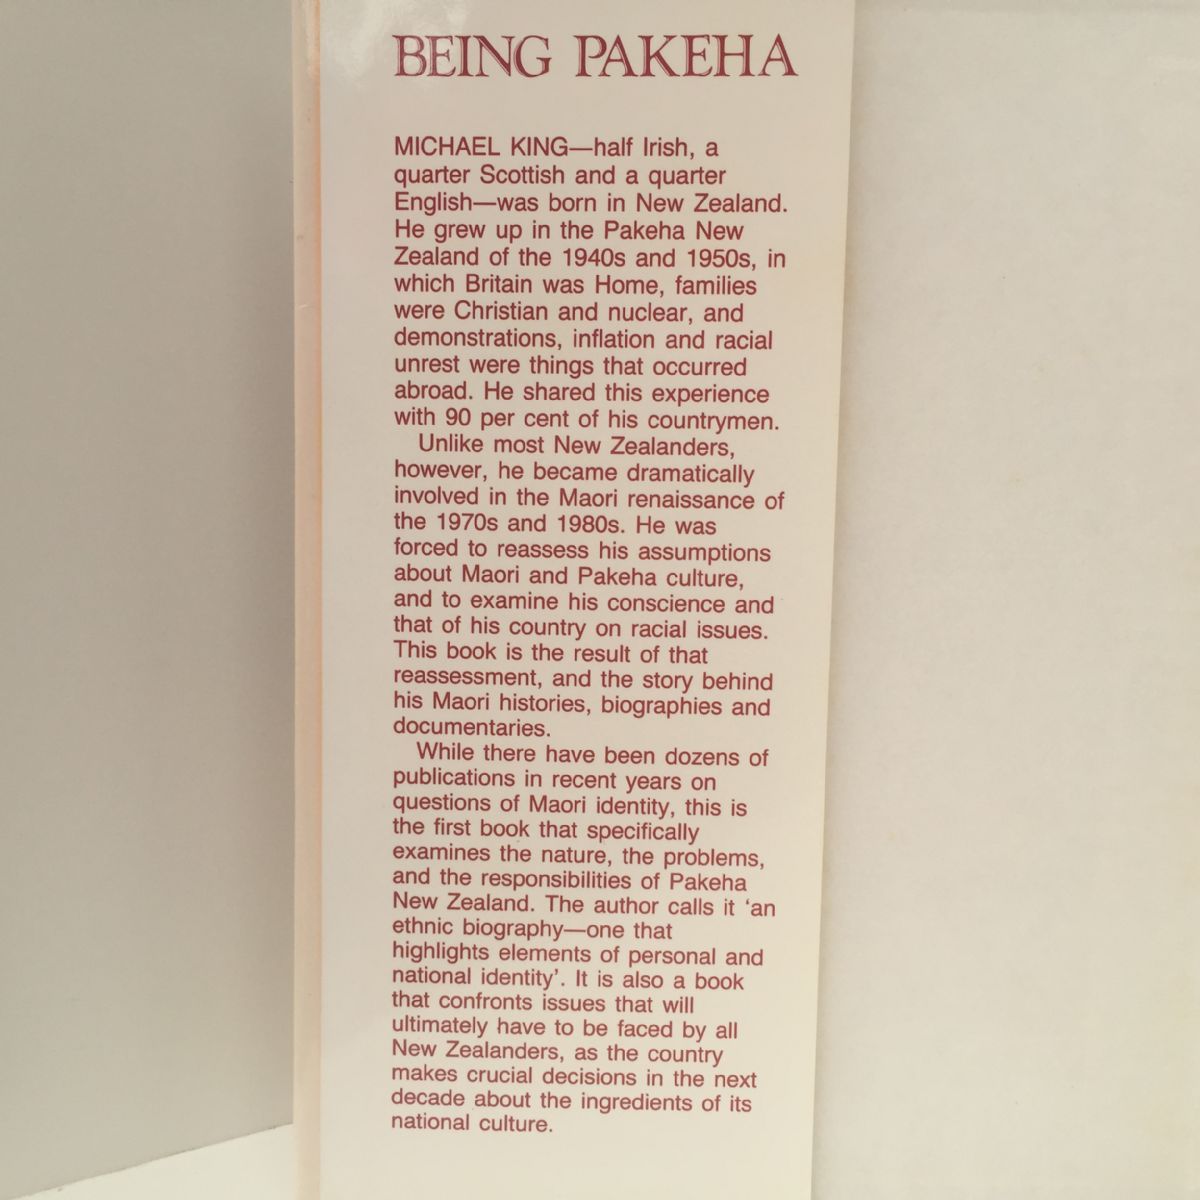 Being Pakeha